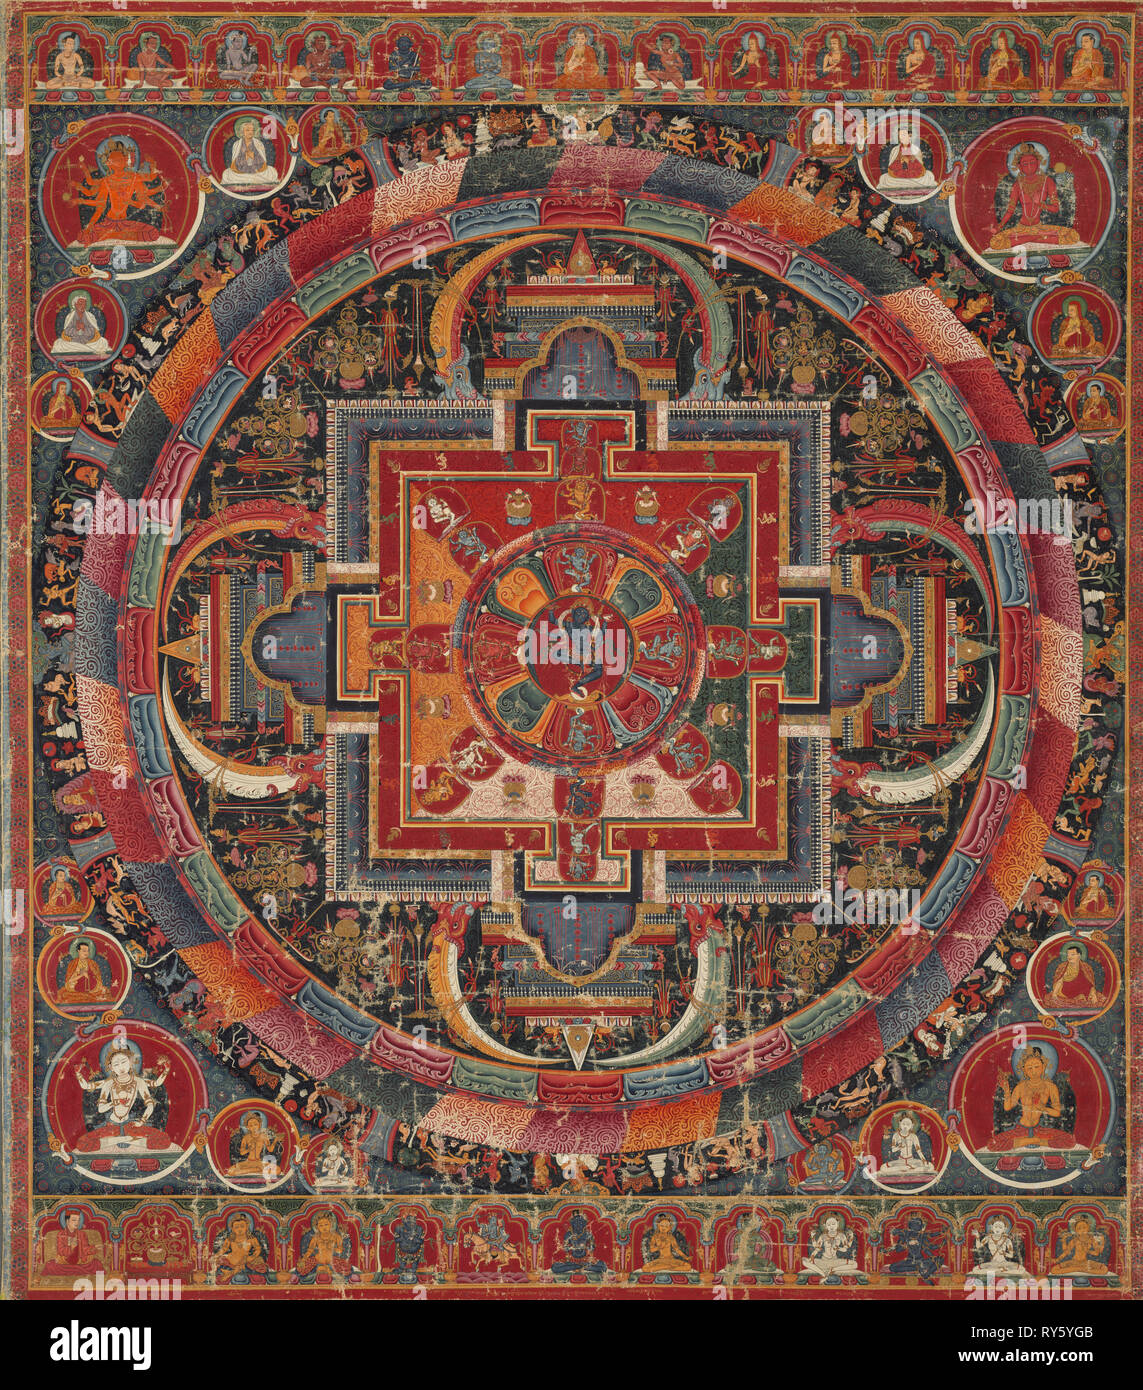 Vingt-trois divinité Nairatma Mandala, c. 1375. Le Tibet central, monastère de Sakya-affiliés, 14ème siècle. Aquarelle opaque, de l'or, et de l'encre sur un tissu ; total : 82,5 x 72,4 cm (32 1/2 x 28 1/2 po Banque D'Images